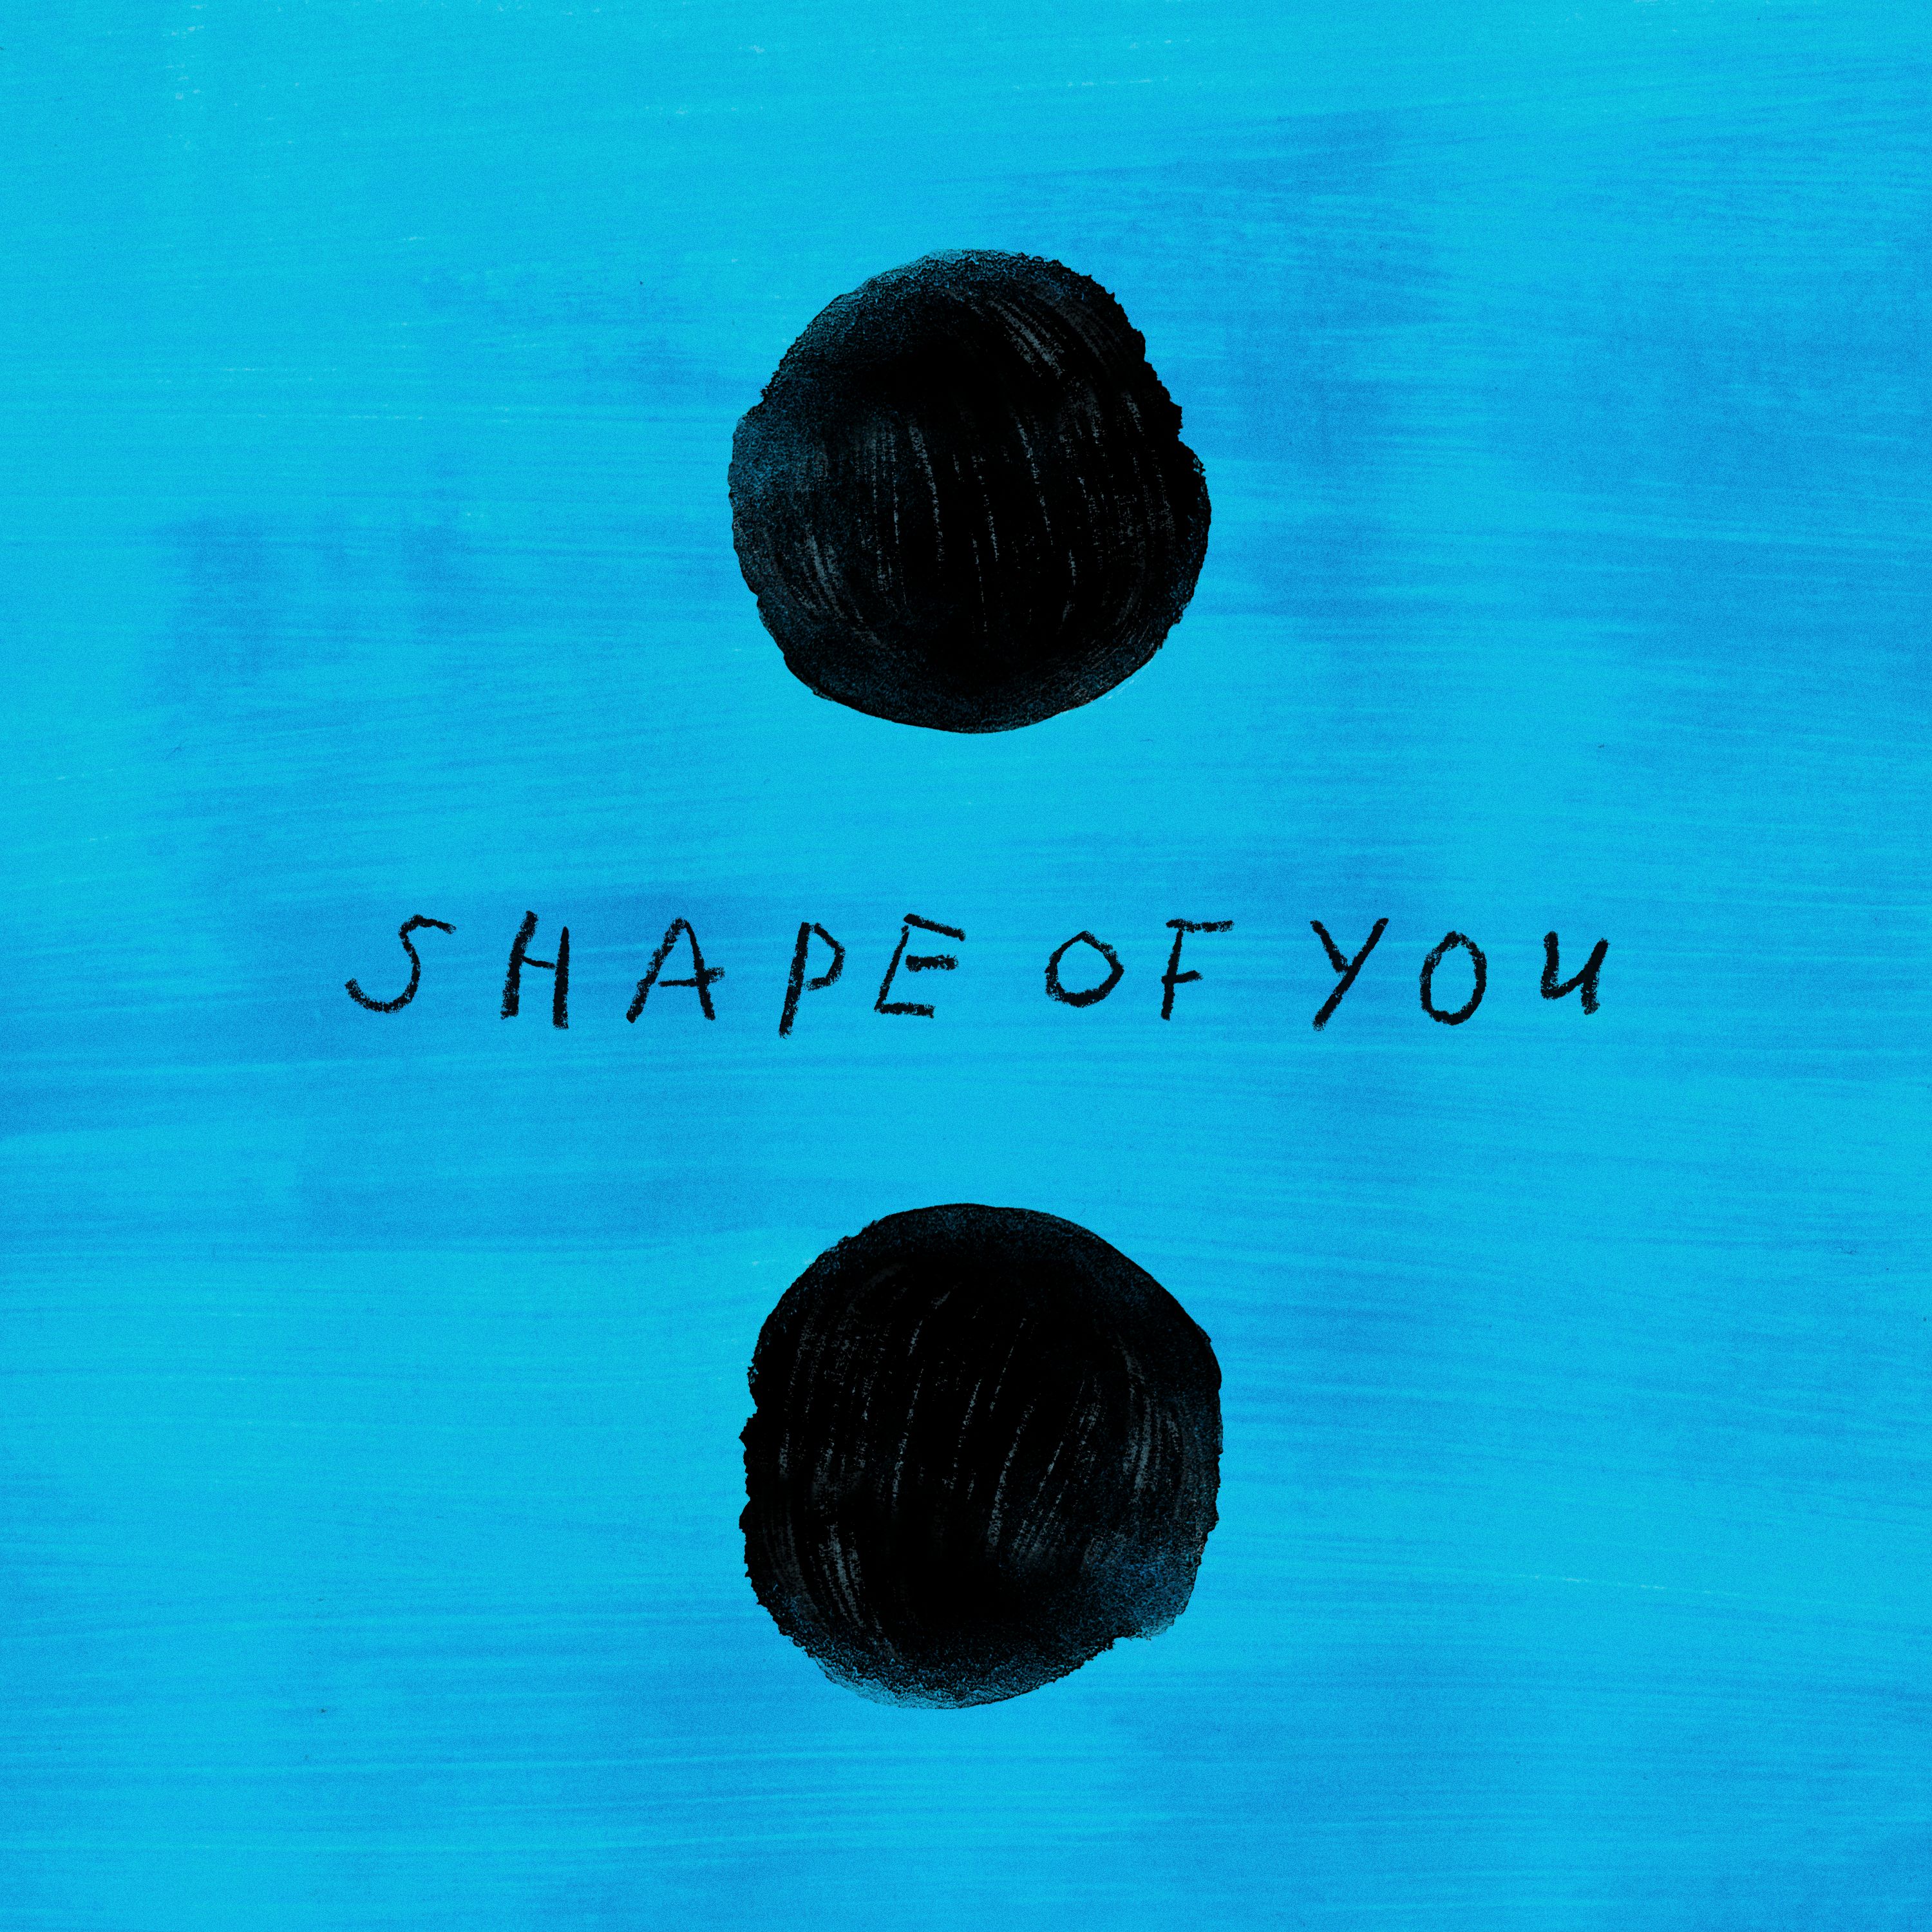 הורד Ed Sheeran - Shape of You